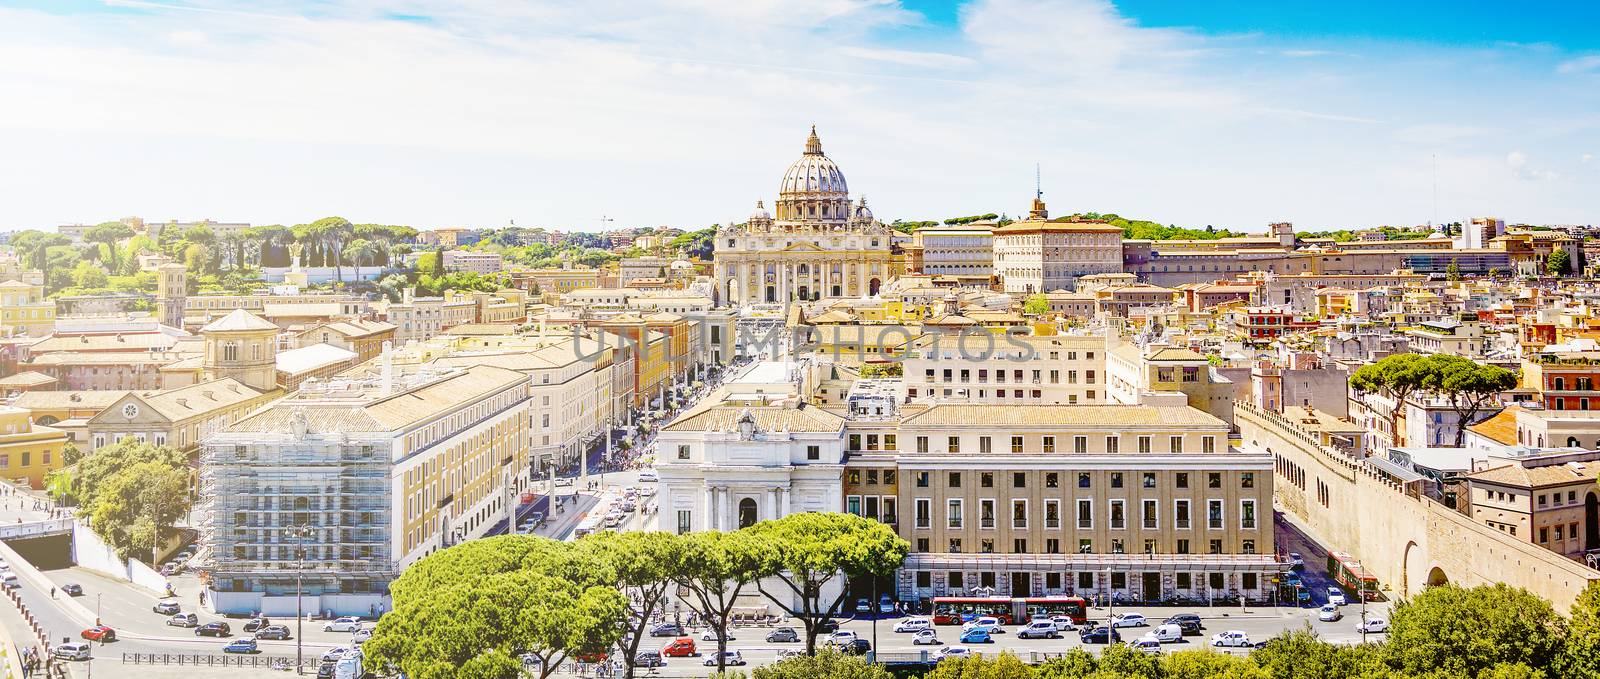 panoramic view of Rome by rarrarorro